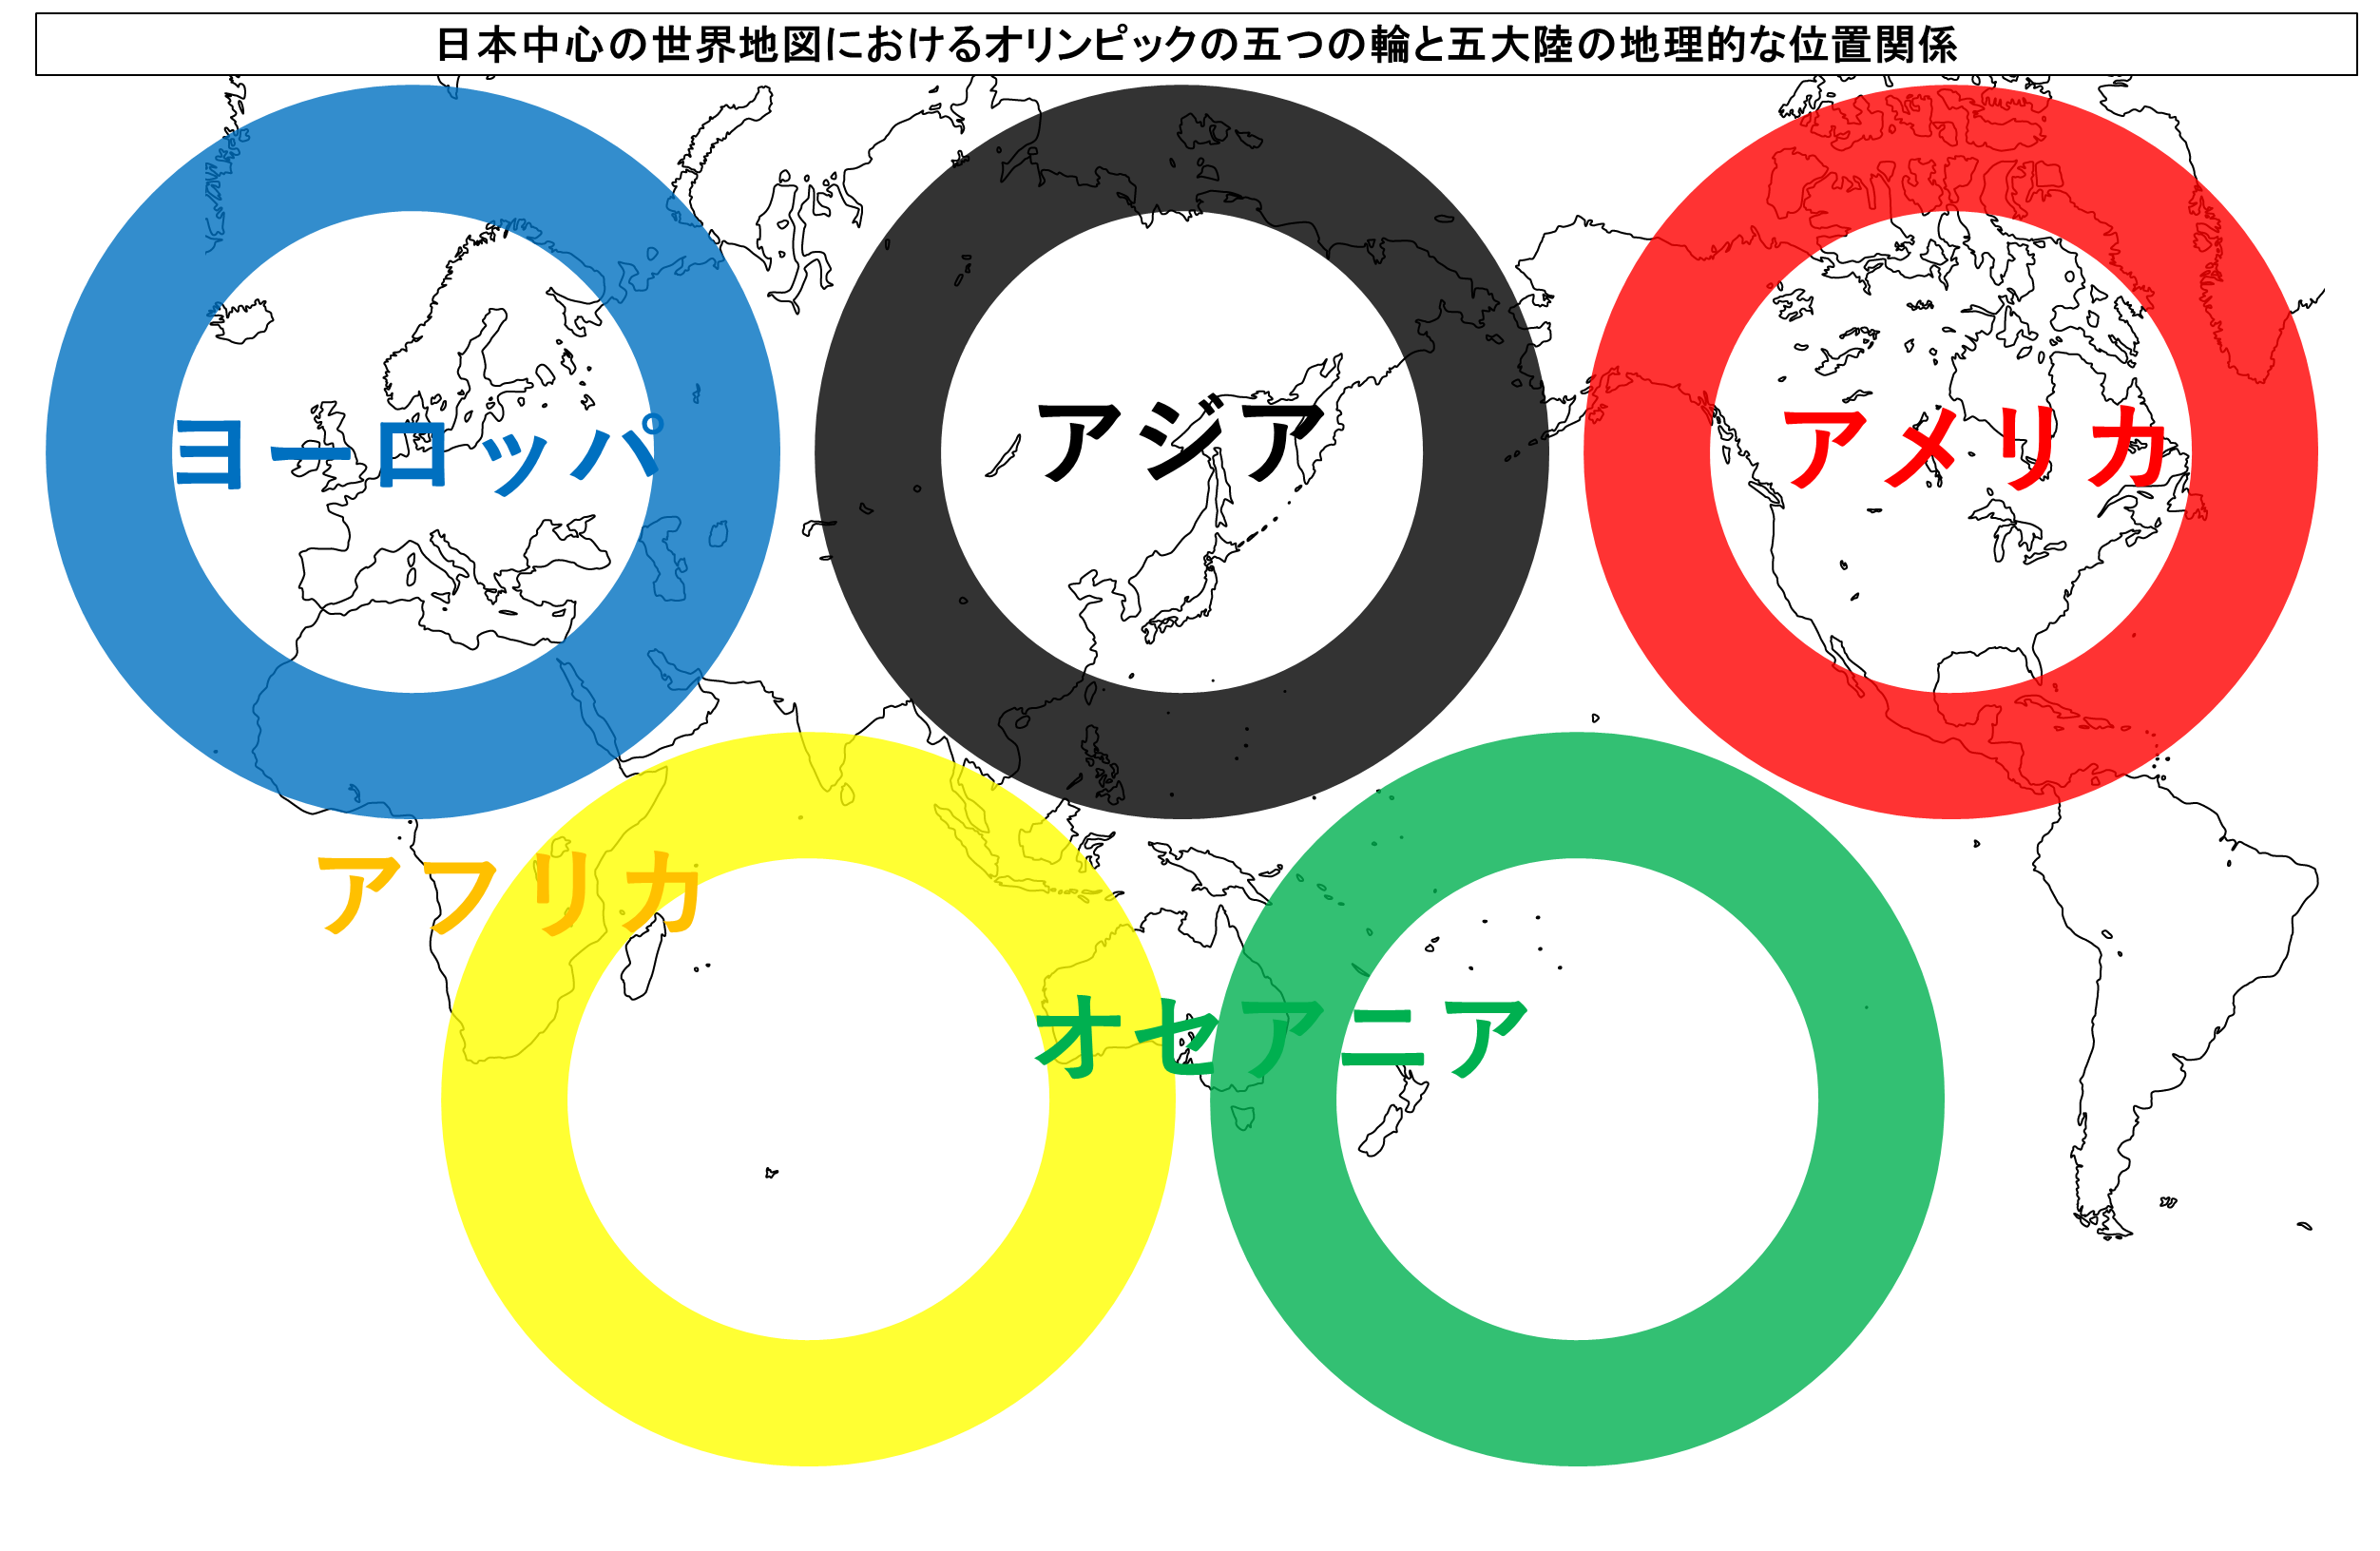 日本中心の世界地図におけるオリンピックの五色と五大陸との地理的な対応関係とは？アジア大陸を中心とする五大陸の位置づけ